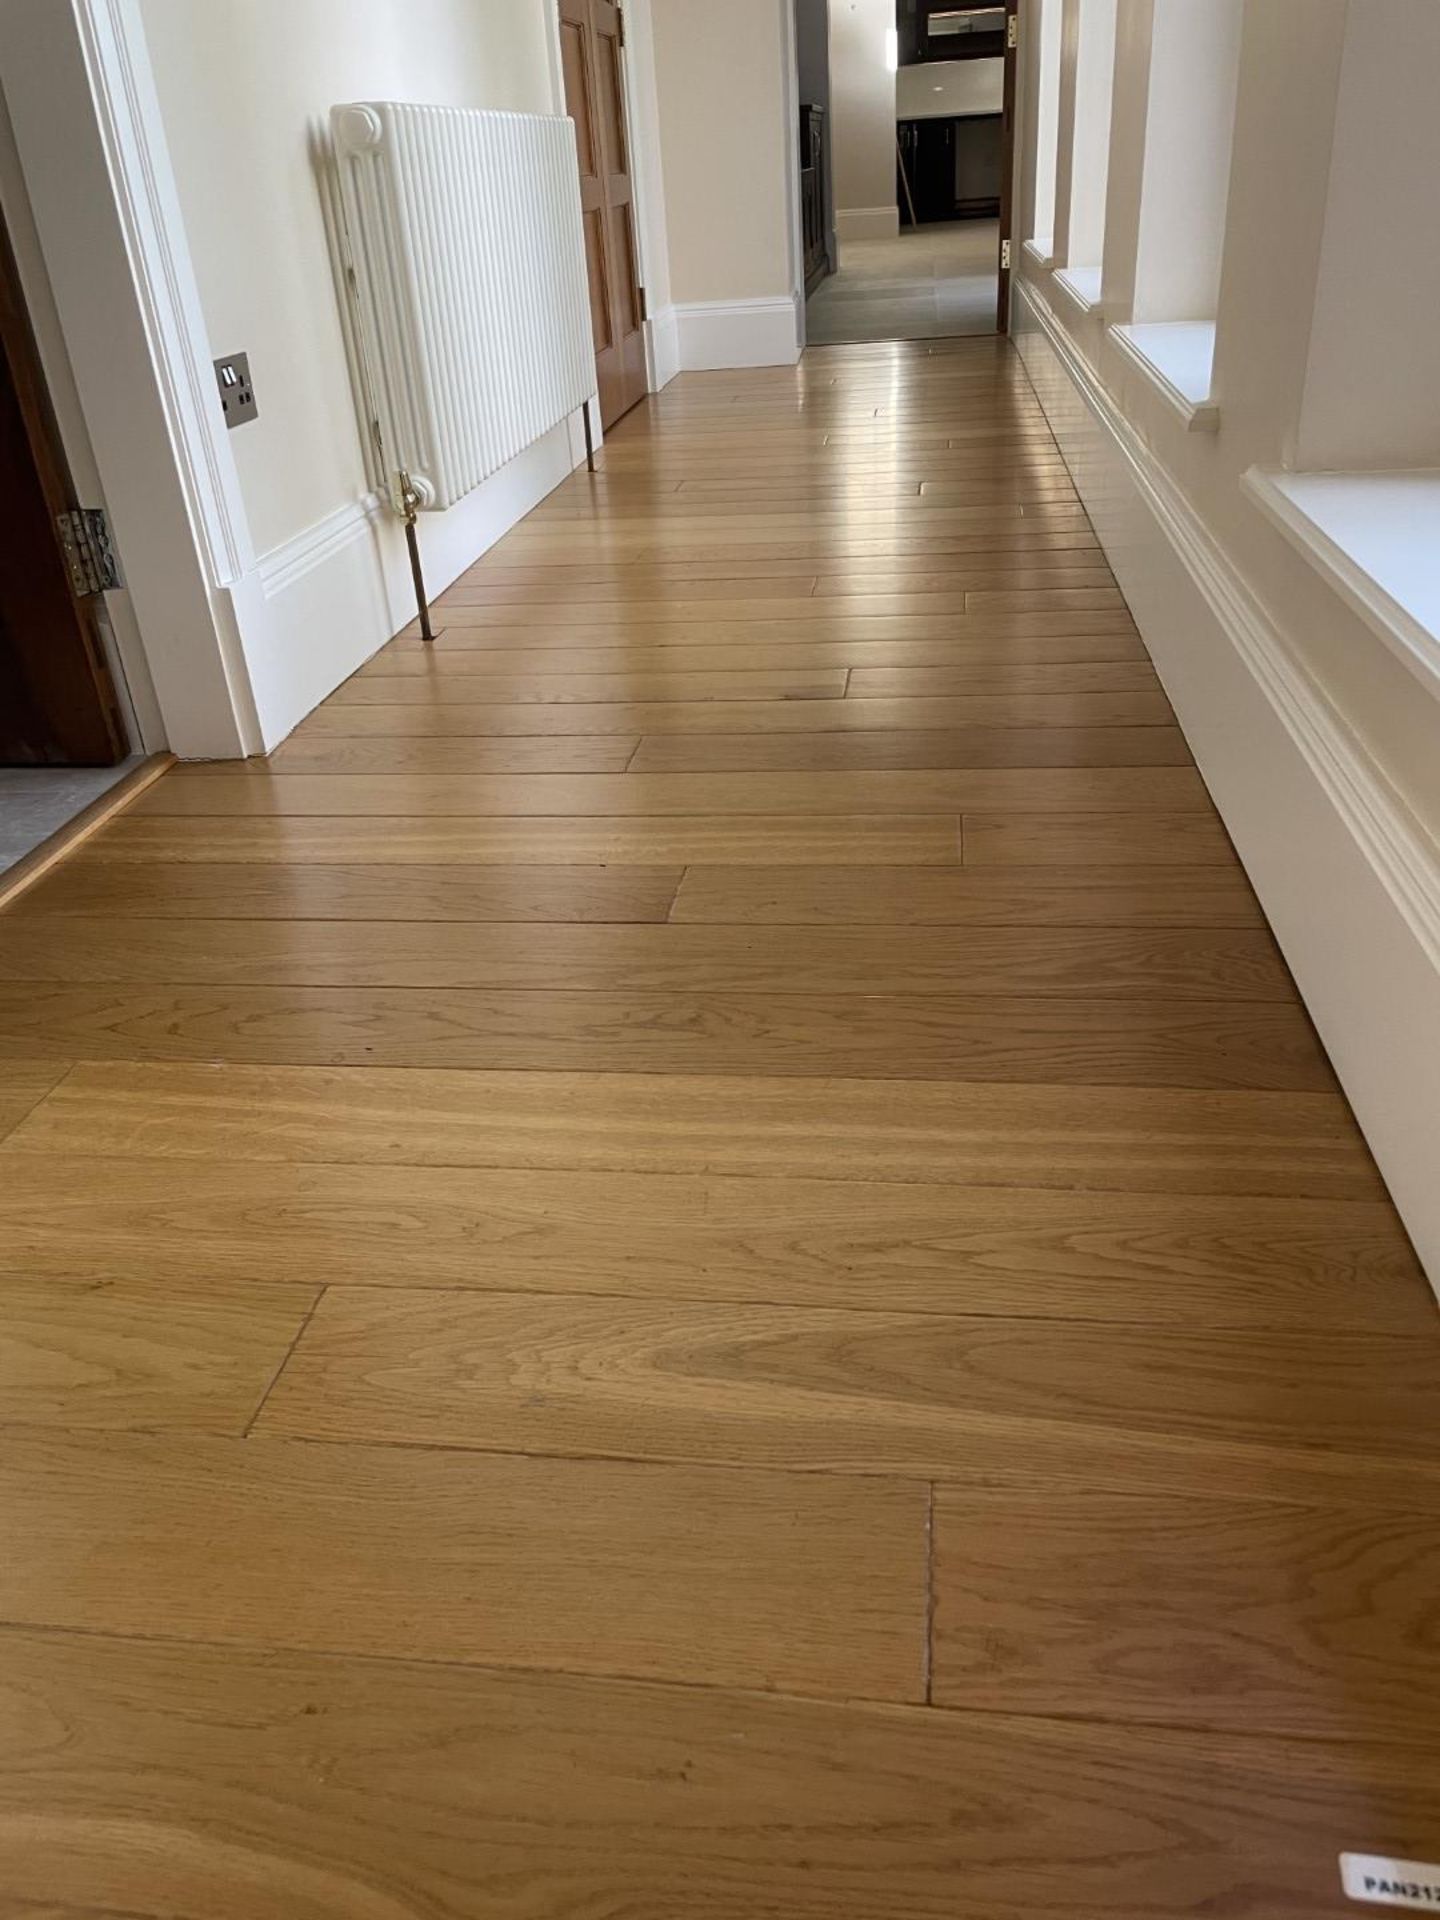 1 x Fine Oak Hardwood Hallway Flooring - 6.3 x 1.2 Metres - Ref: PAN212 - CL896 - NO VAT - Image 2 of 6